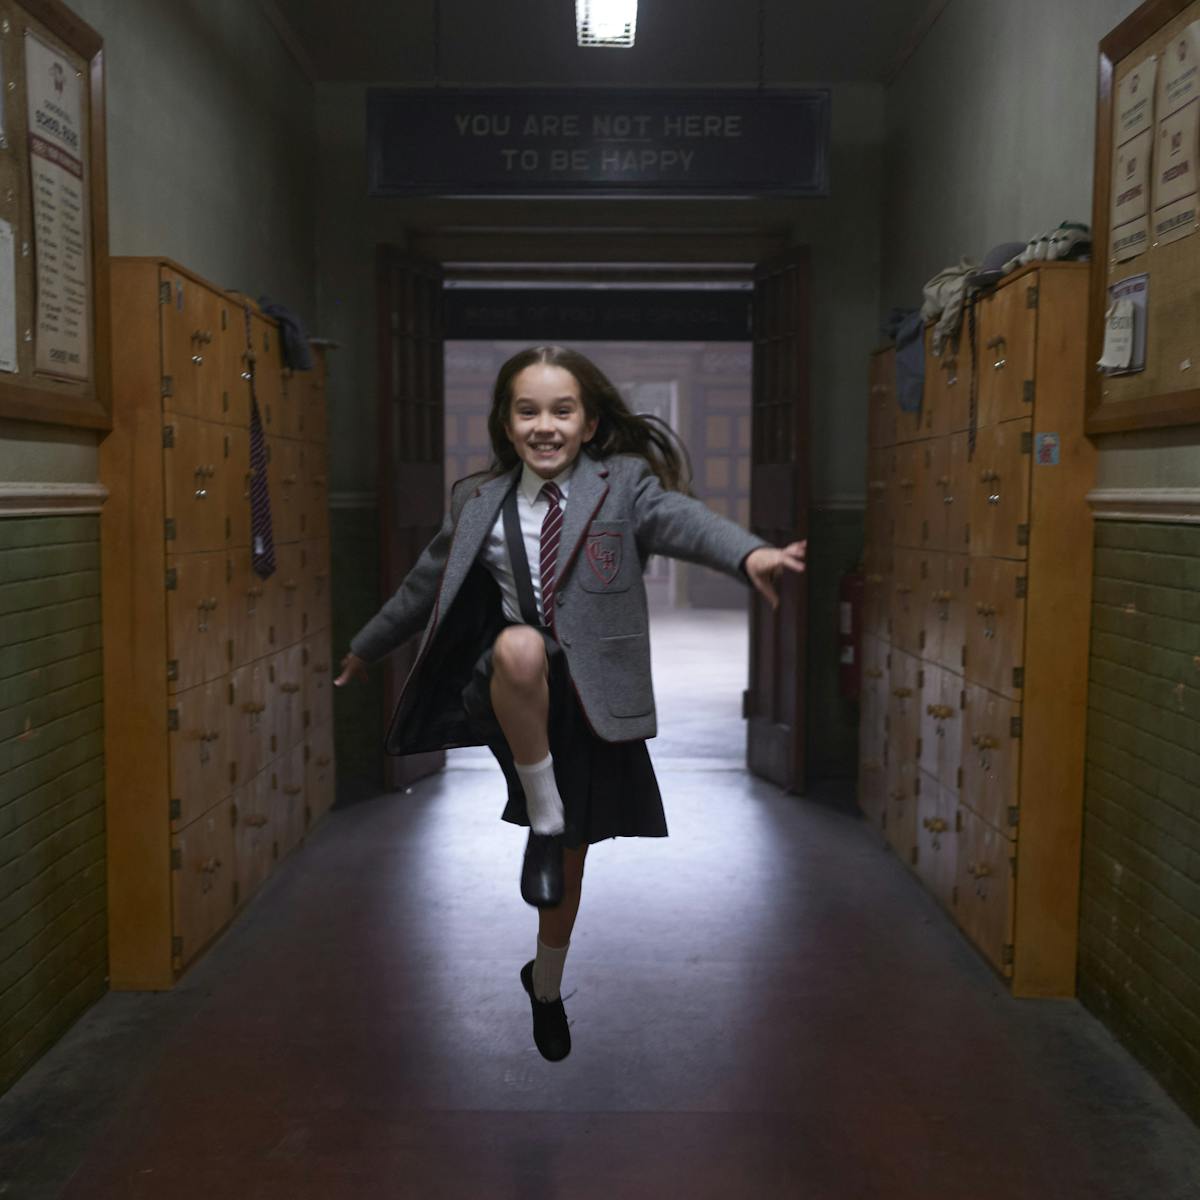 Matilda (Alisha Weir) dances down the hallway in her school uniform. 